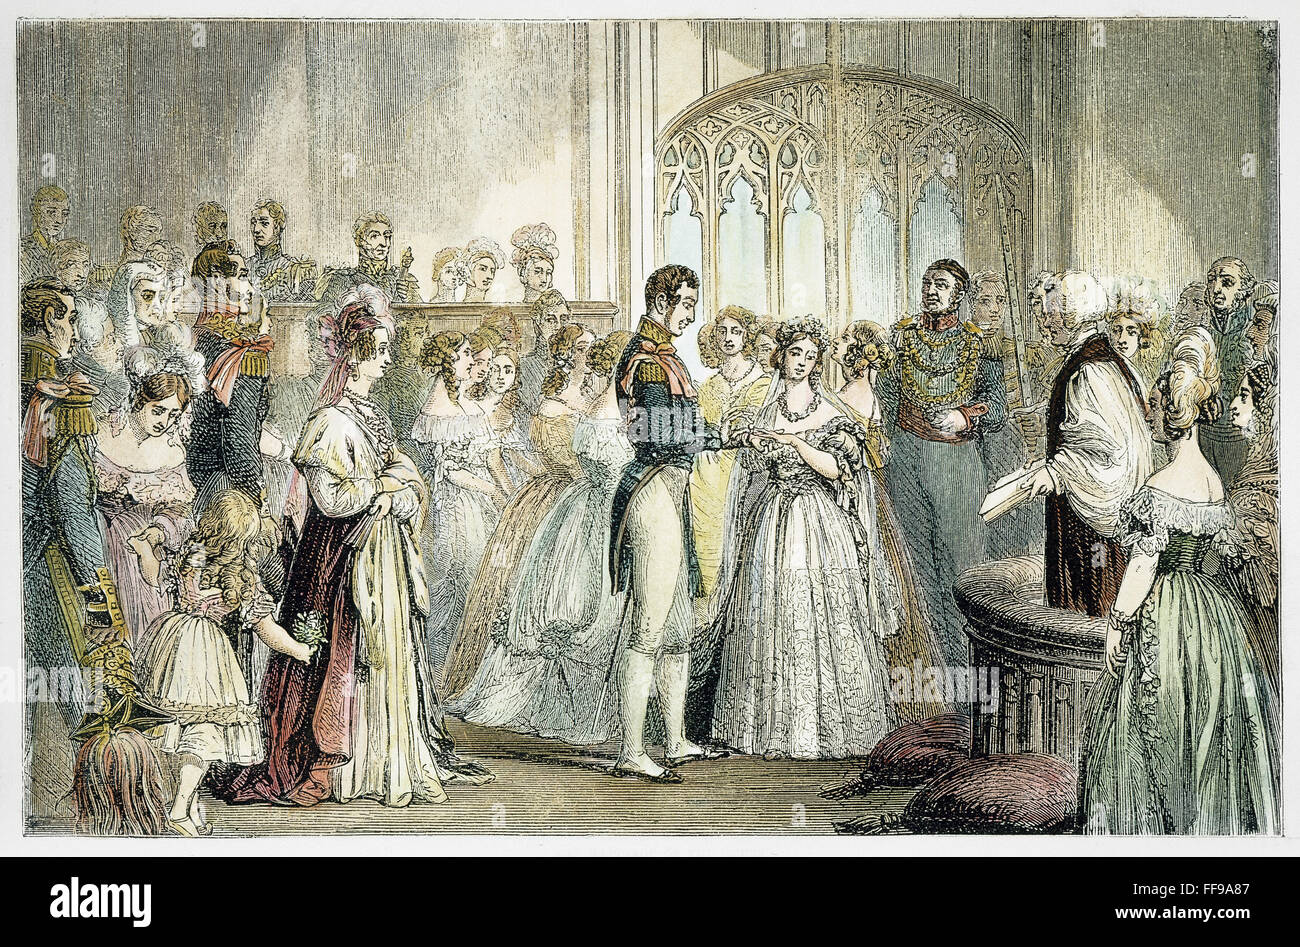 HOCHZEIT VON KÖNIGIN VICTORIA. /nThe Hochzeit von Königin Victoria von England und Prinz Albert von Sachsen-Coburg-Gotha, 10. Februar 1840. Holzstich, 19. Jahrhundert. Stockfoto